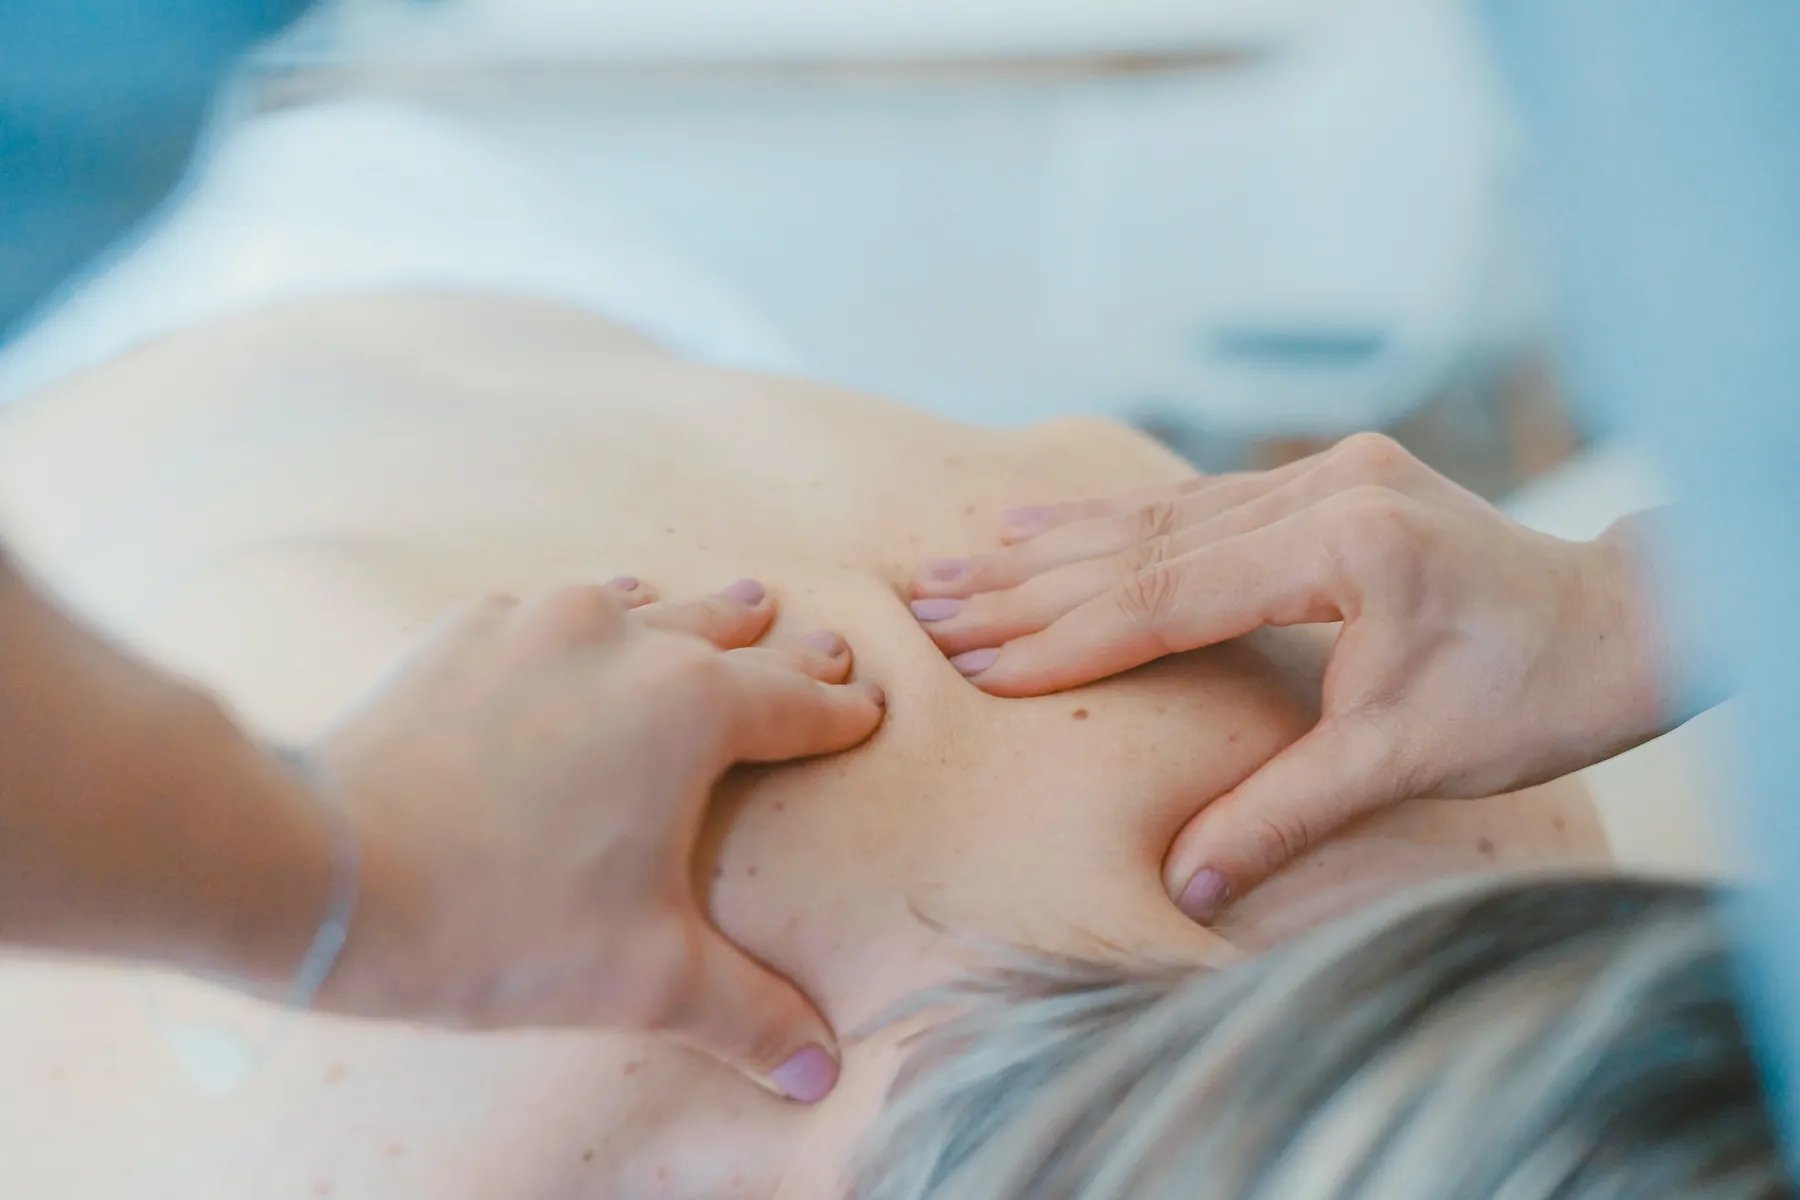 Massage thérapeutique